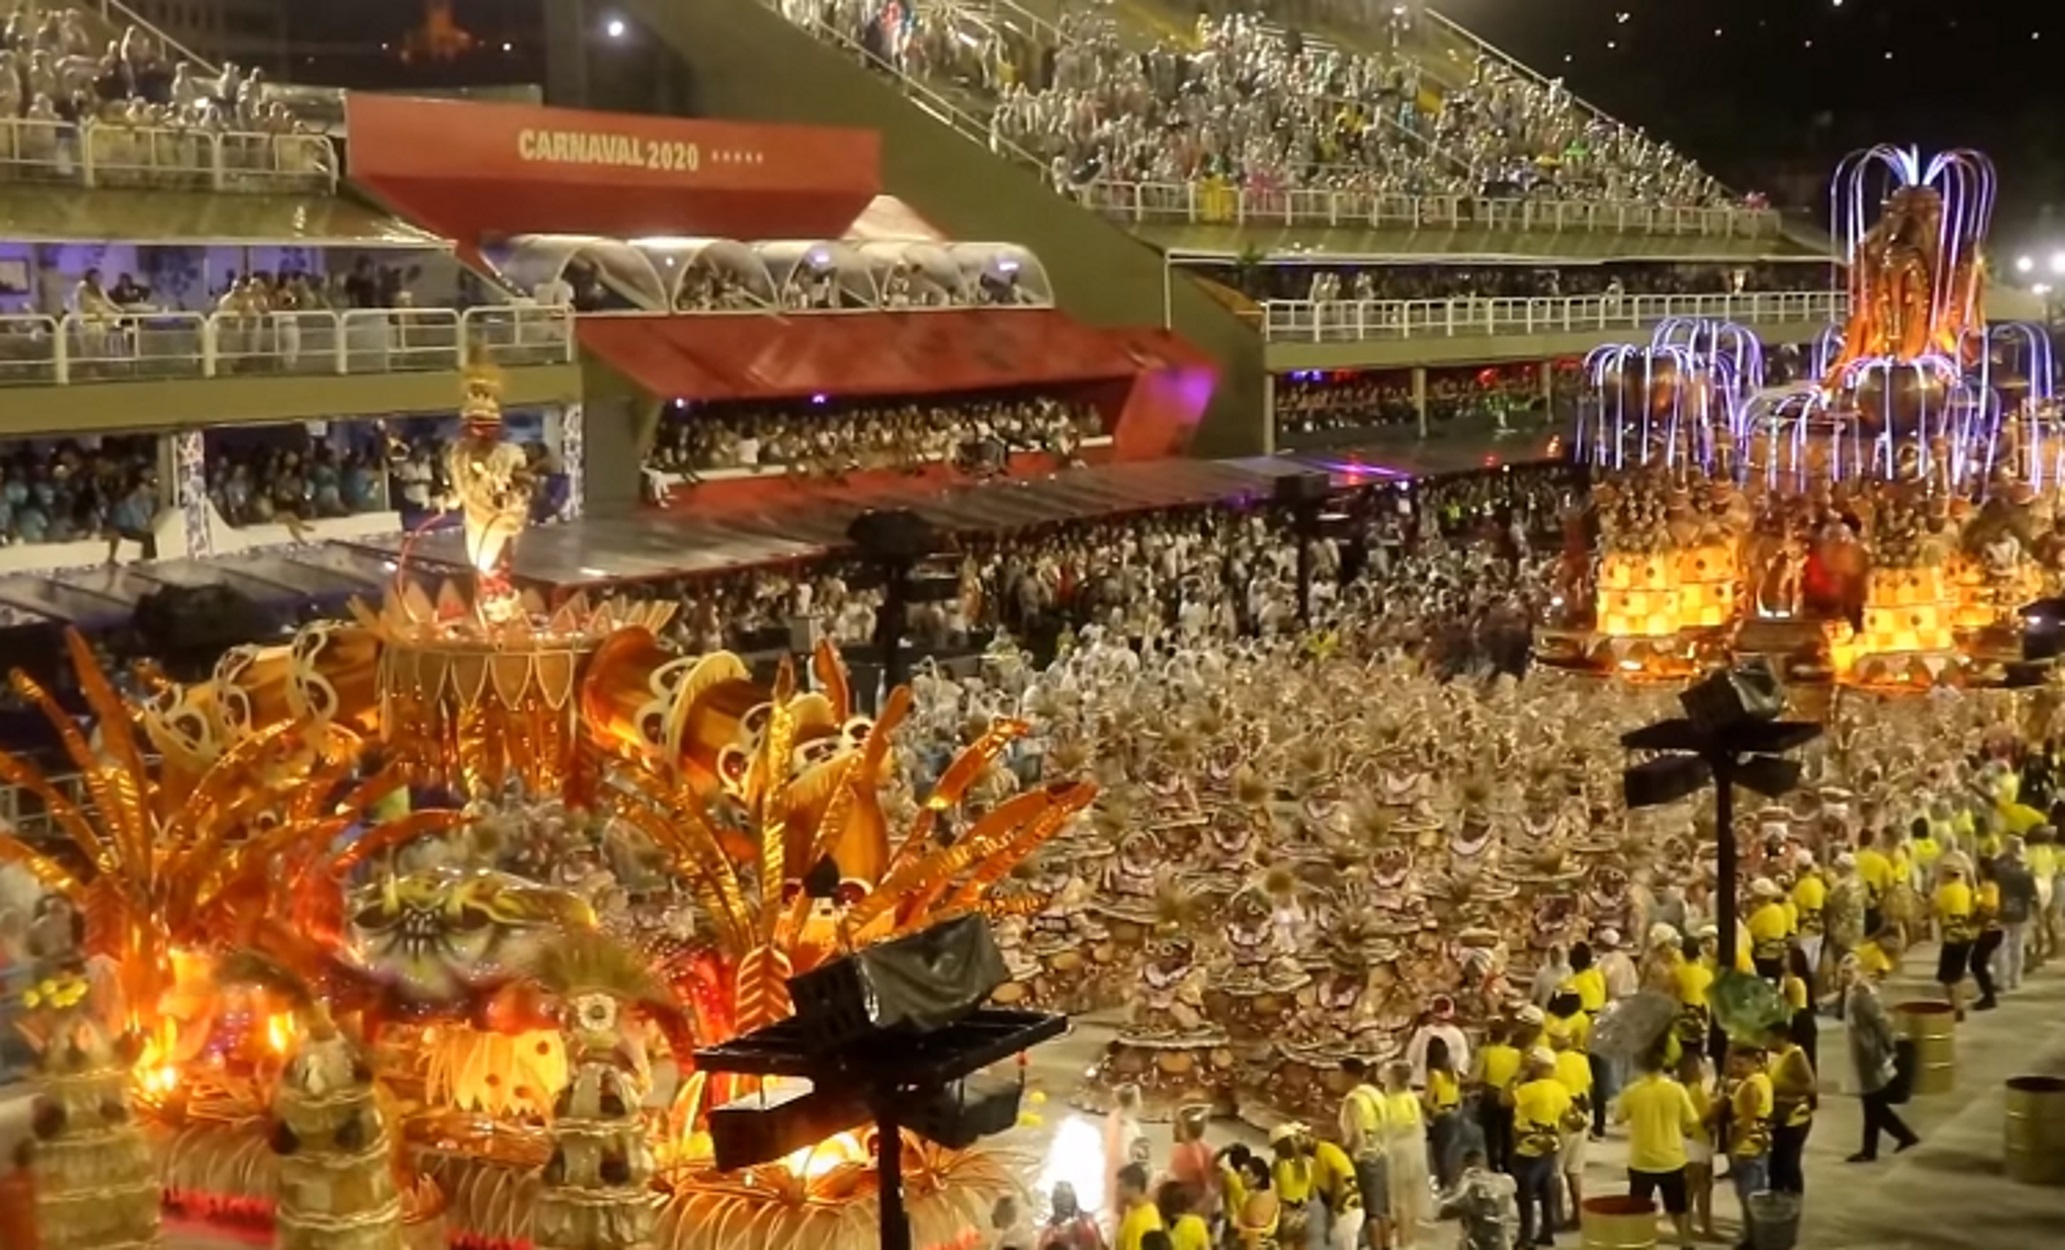 Σάμπα στον “πάγο”! Μετέωρο το καρναβάλι του Ρίο λόγω κορονοϊού (pic, video)